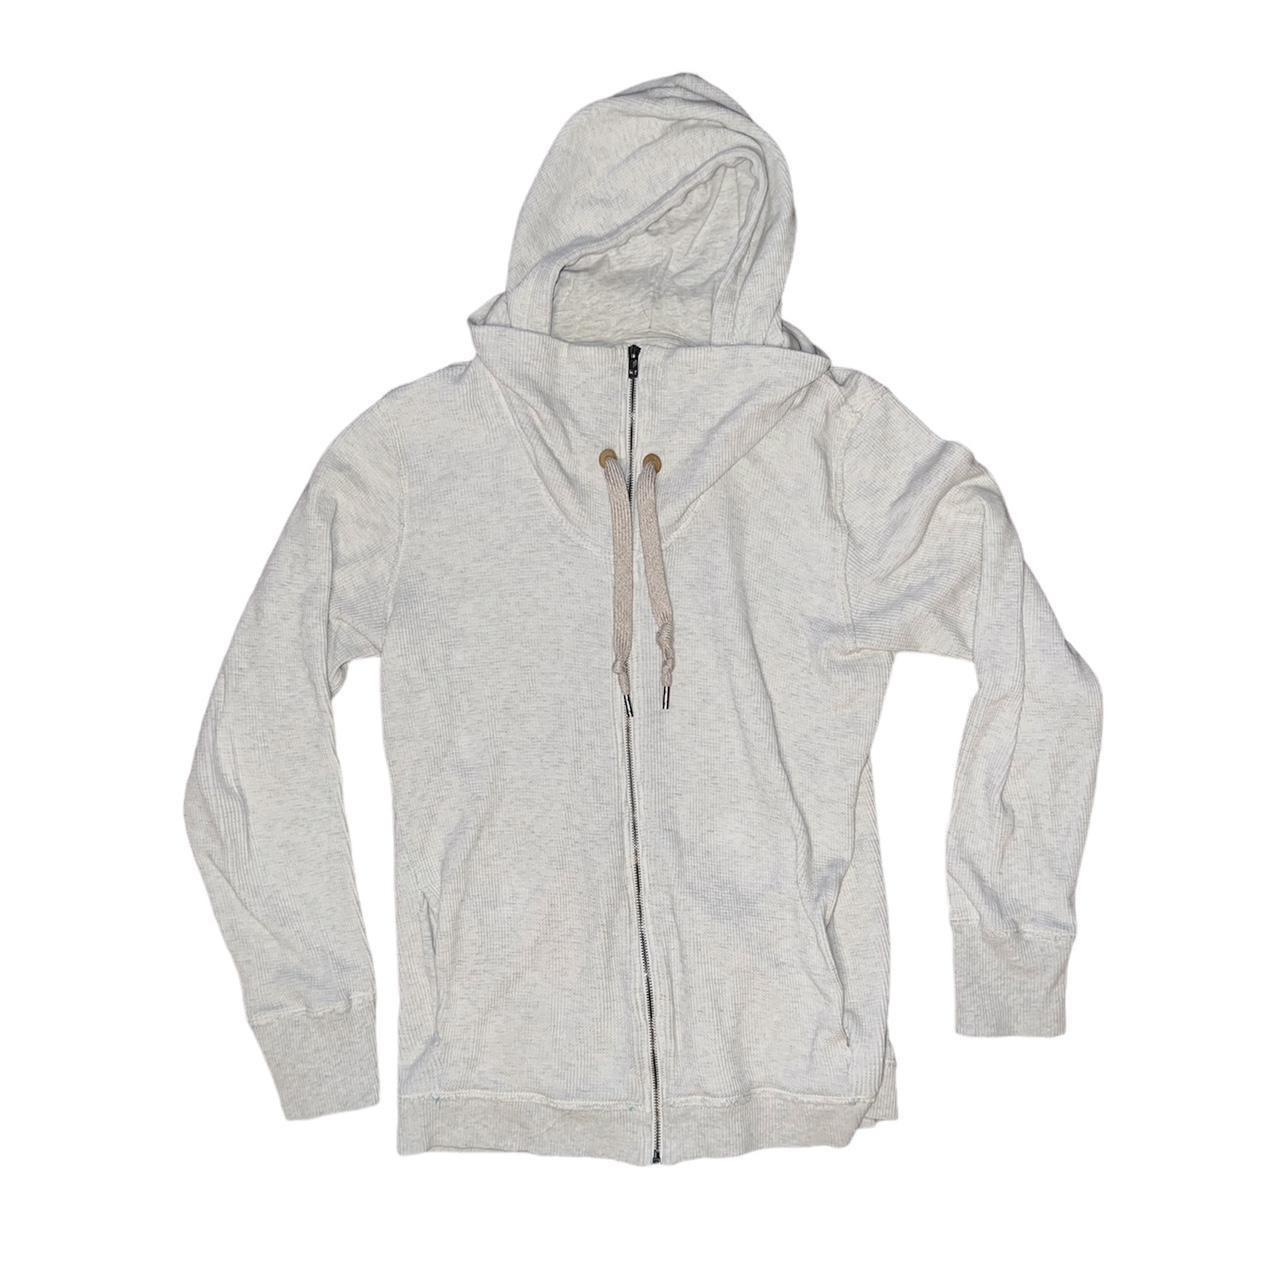 Diesel vintage zip up hoodie with cool design. It’s... - Depop